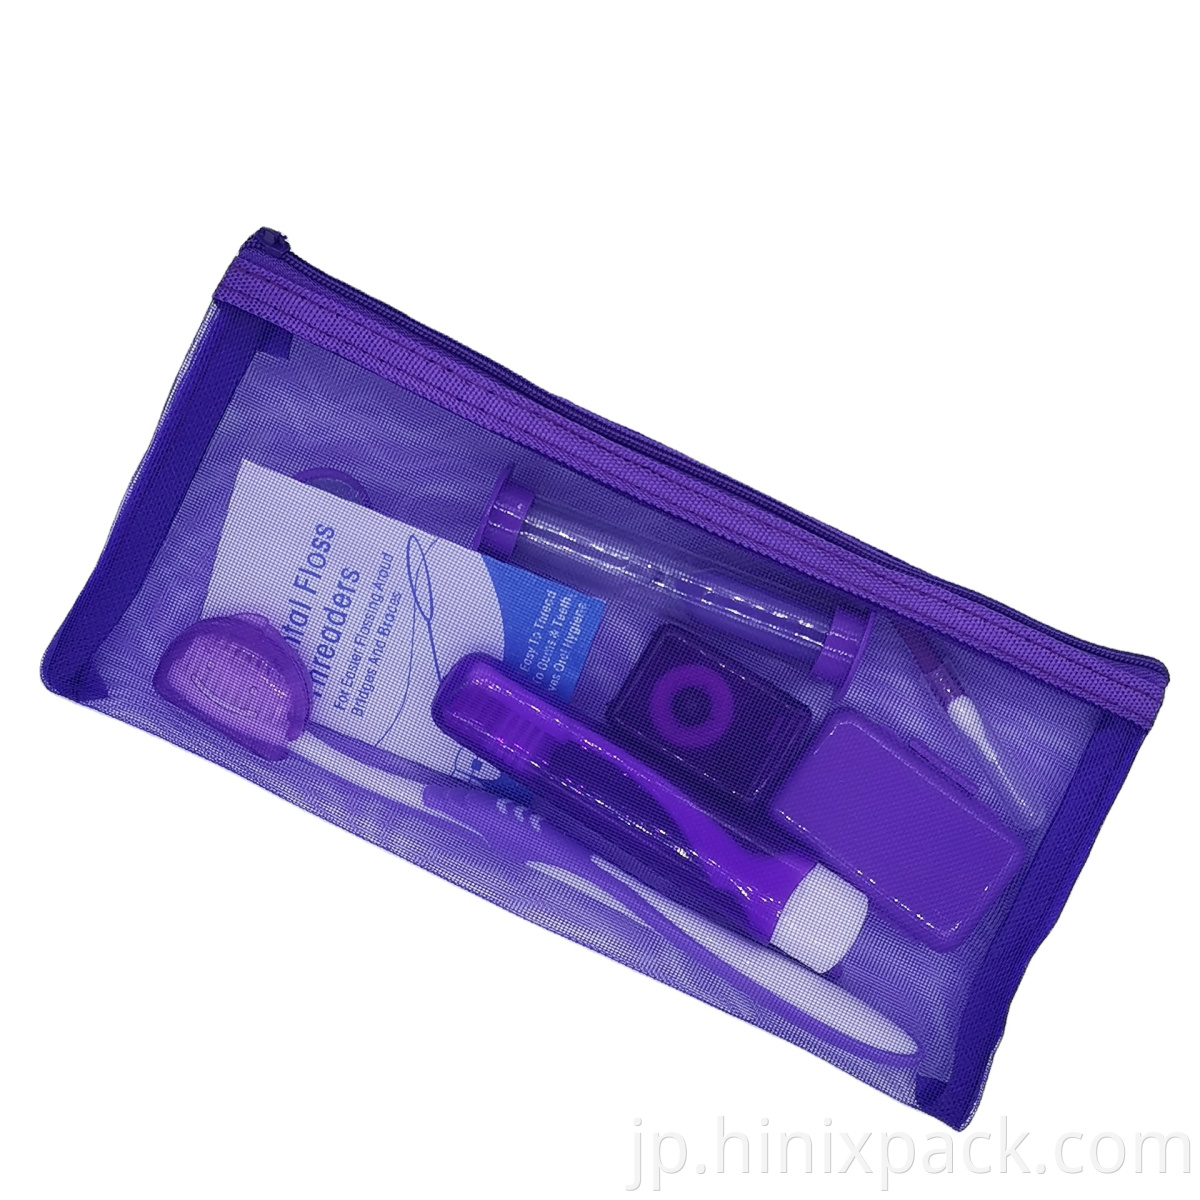 ポータブル8 in 1 Travel Dental Hygiene Clean Care Brush Orthodontic Kit